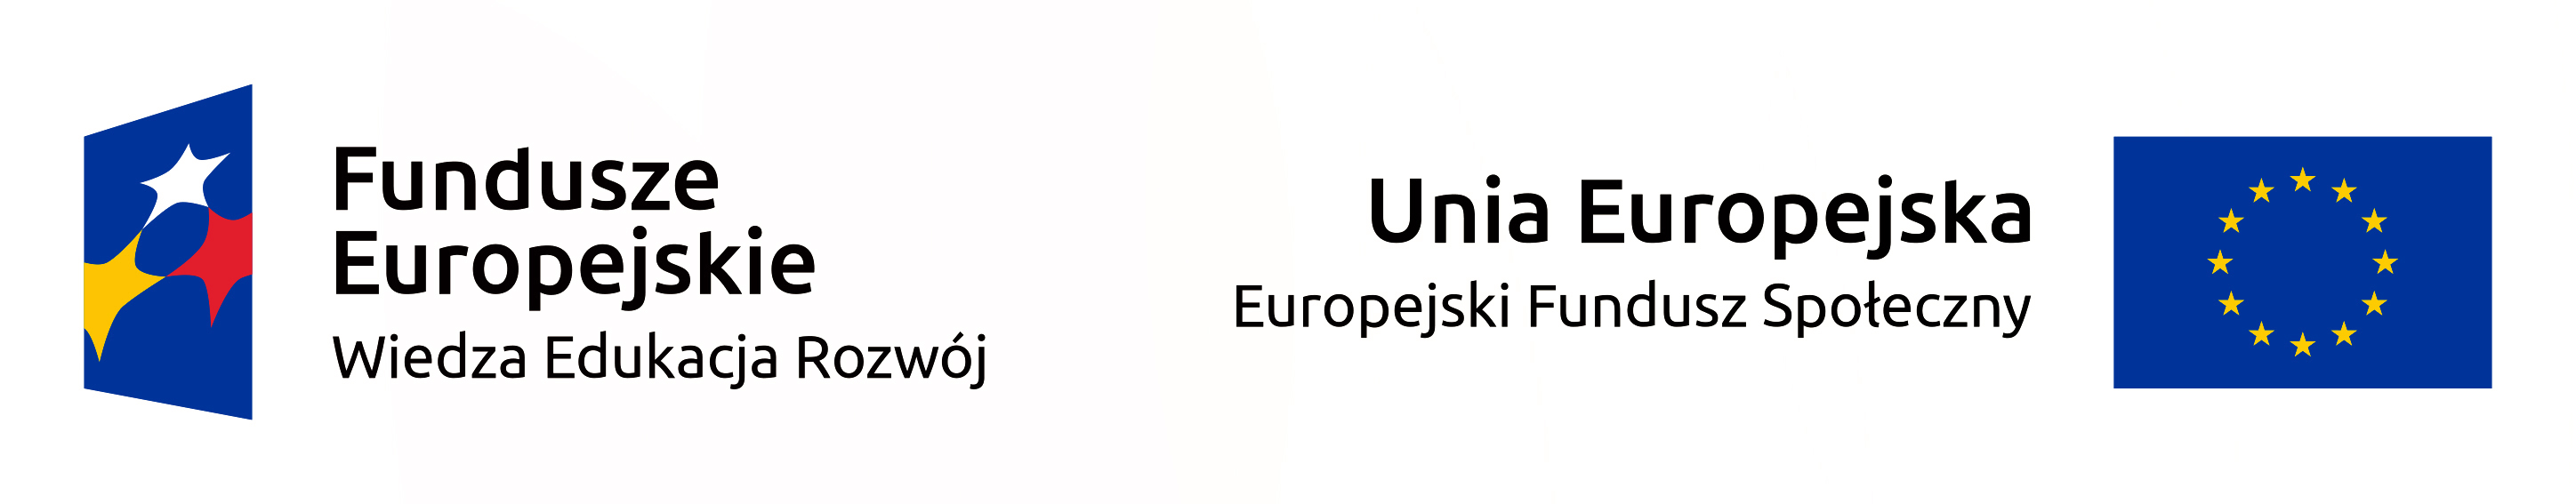 Logotypy: Fundusze Europejskie Wiedza Edukacja Rozwój, Unia Europejska Europejski Fundusz Społeczny